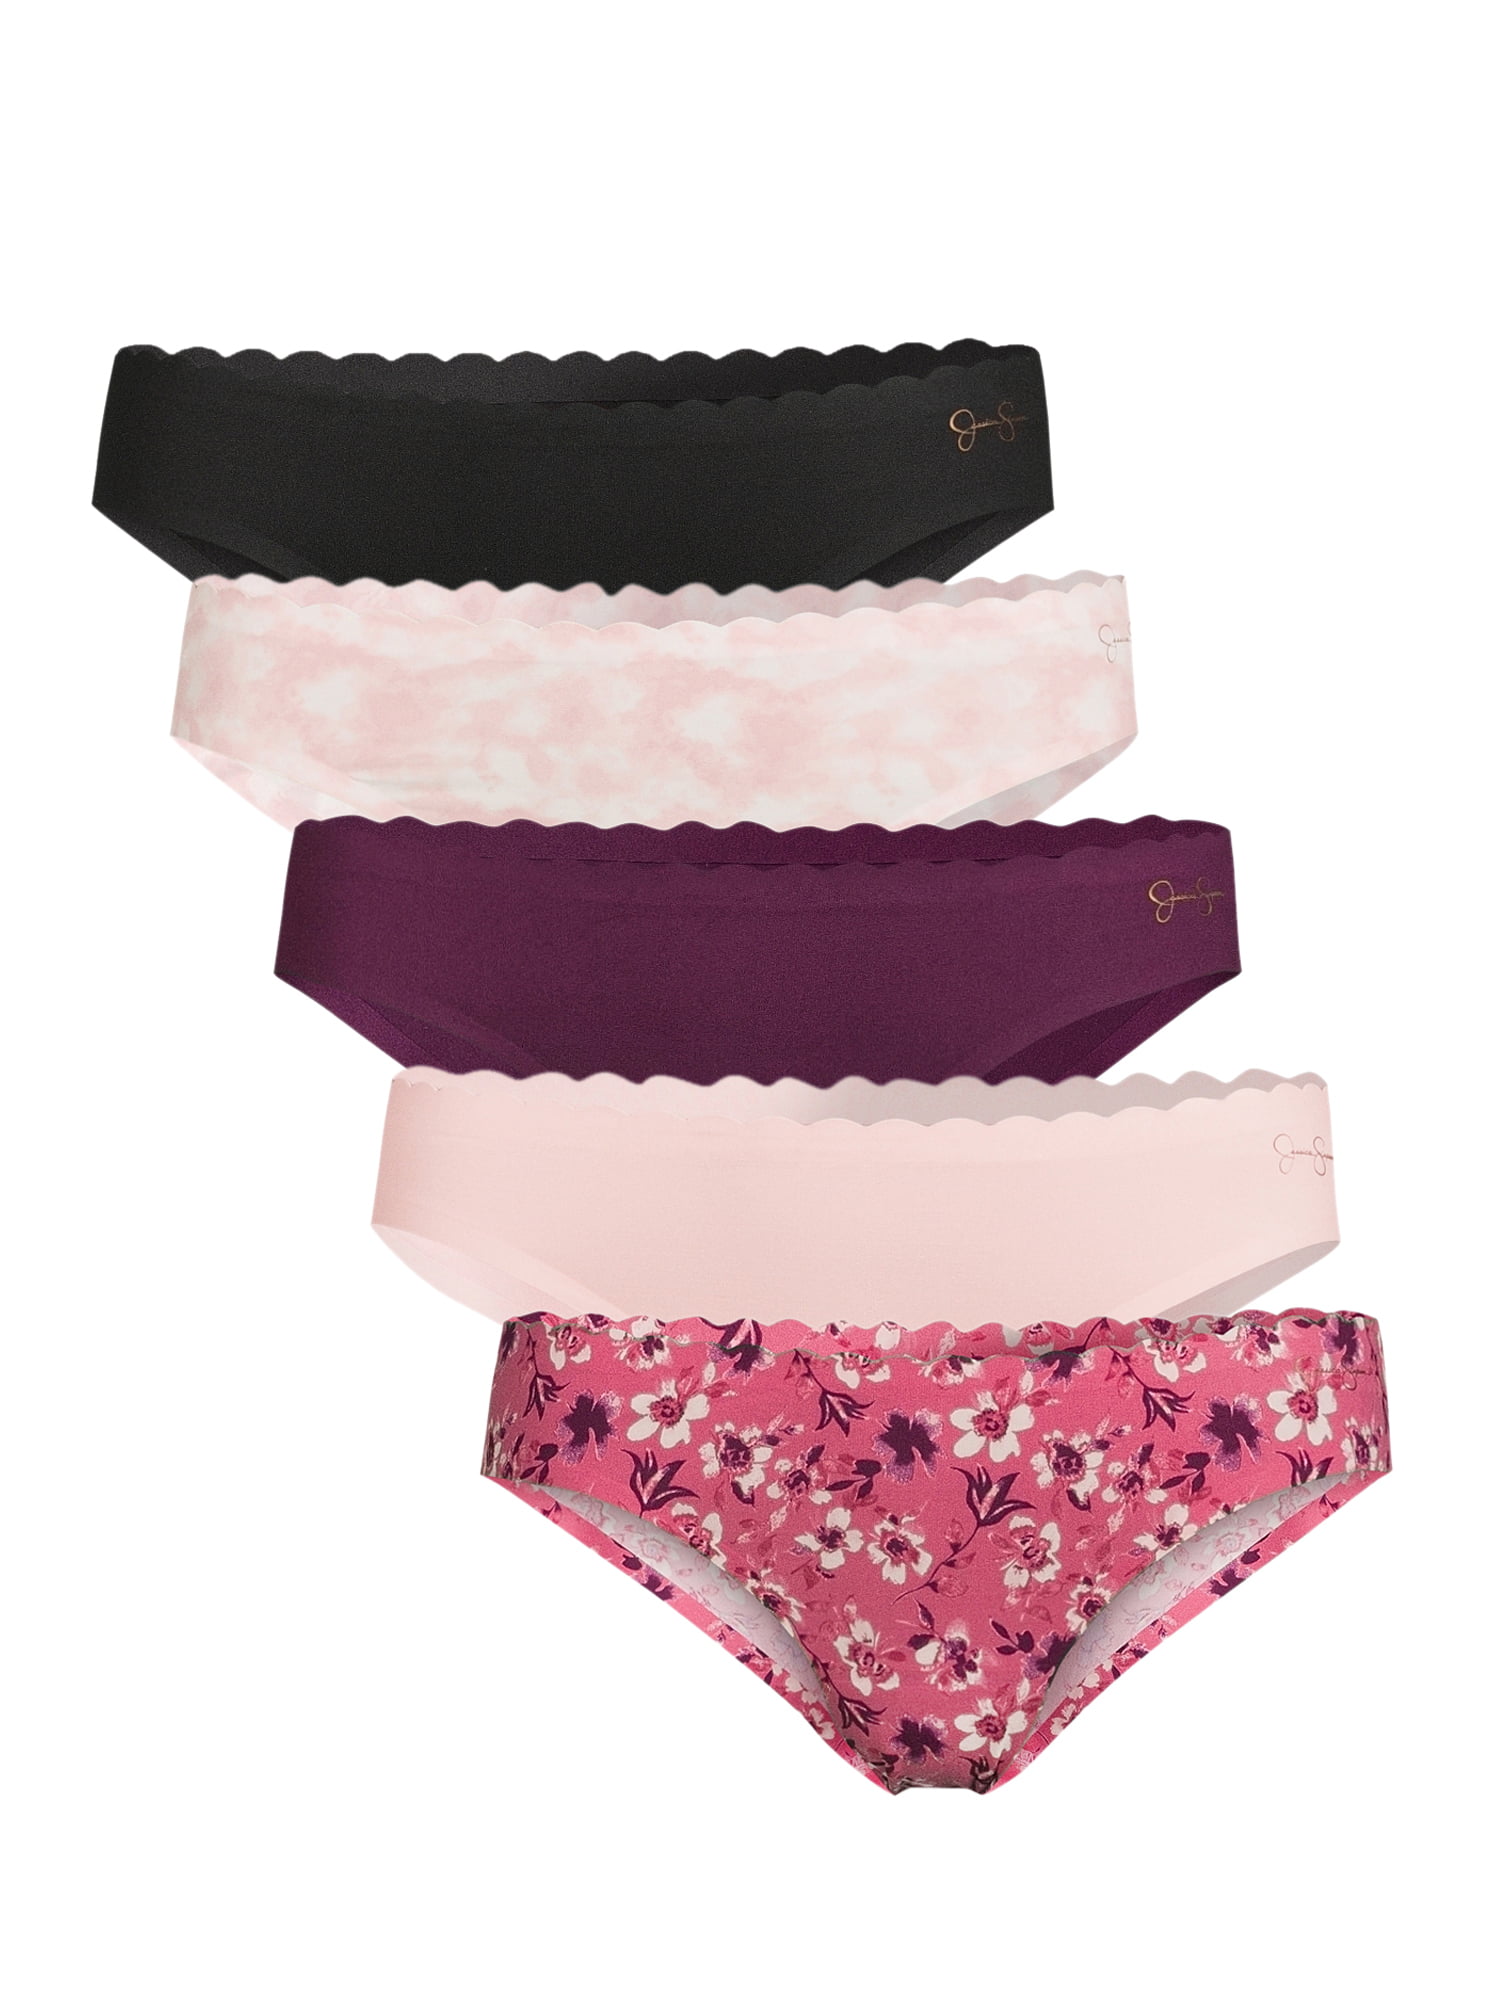 Jessica Simpson Women's Underwear - Microfiber Hipster Briefs (3